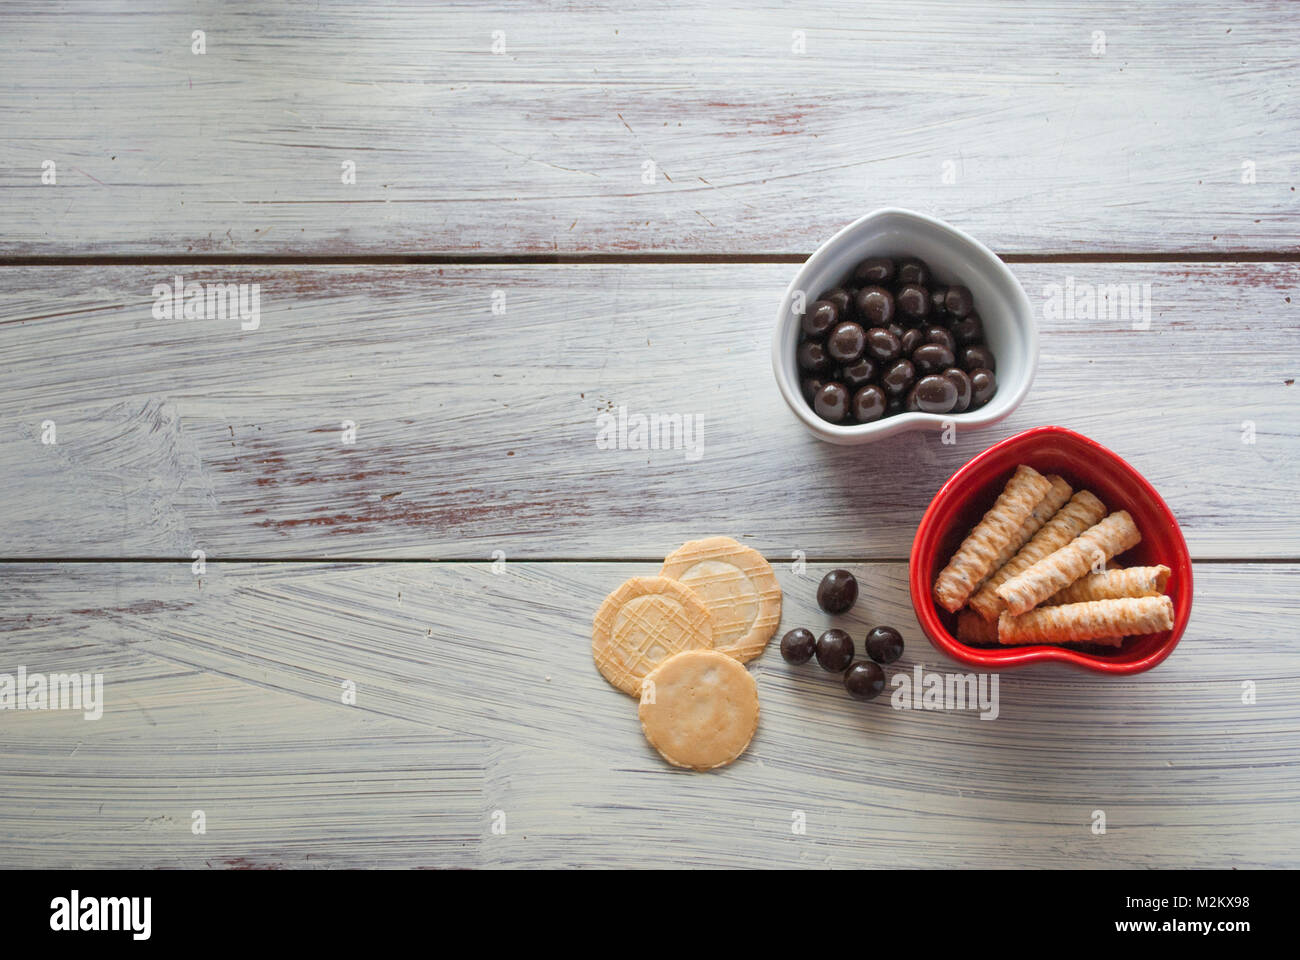 Deux bols en forme de coeur avec des petits gâteaux et bonbons sur vintage wooden surface. concept de célébration Jour de Valentines, morceau de l'amour, la saine alimentation biologique Banque D'Images